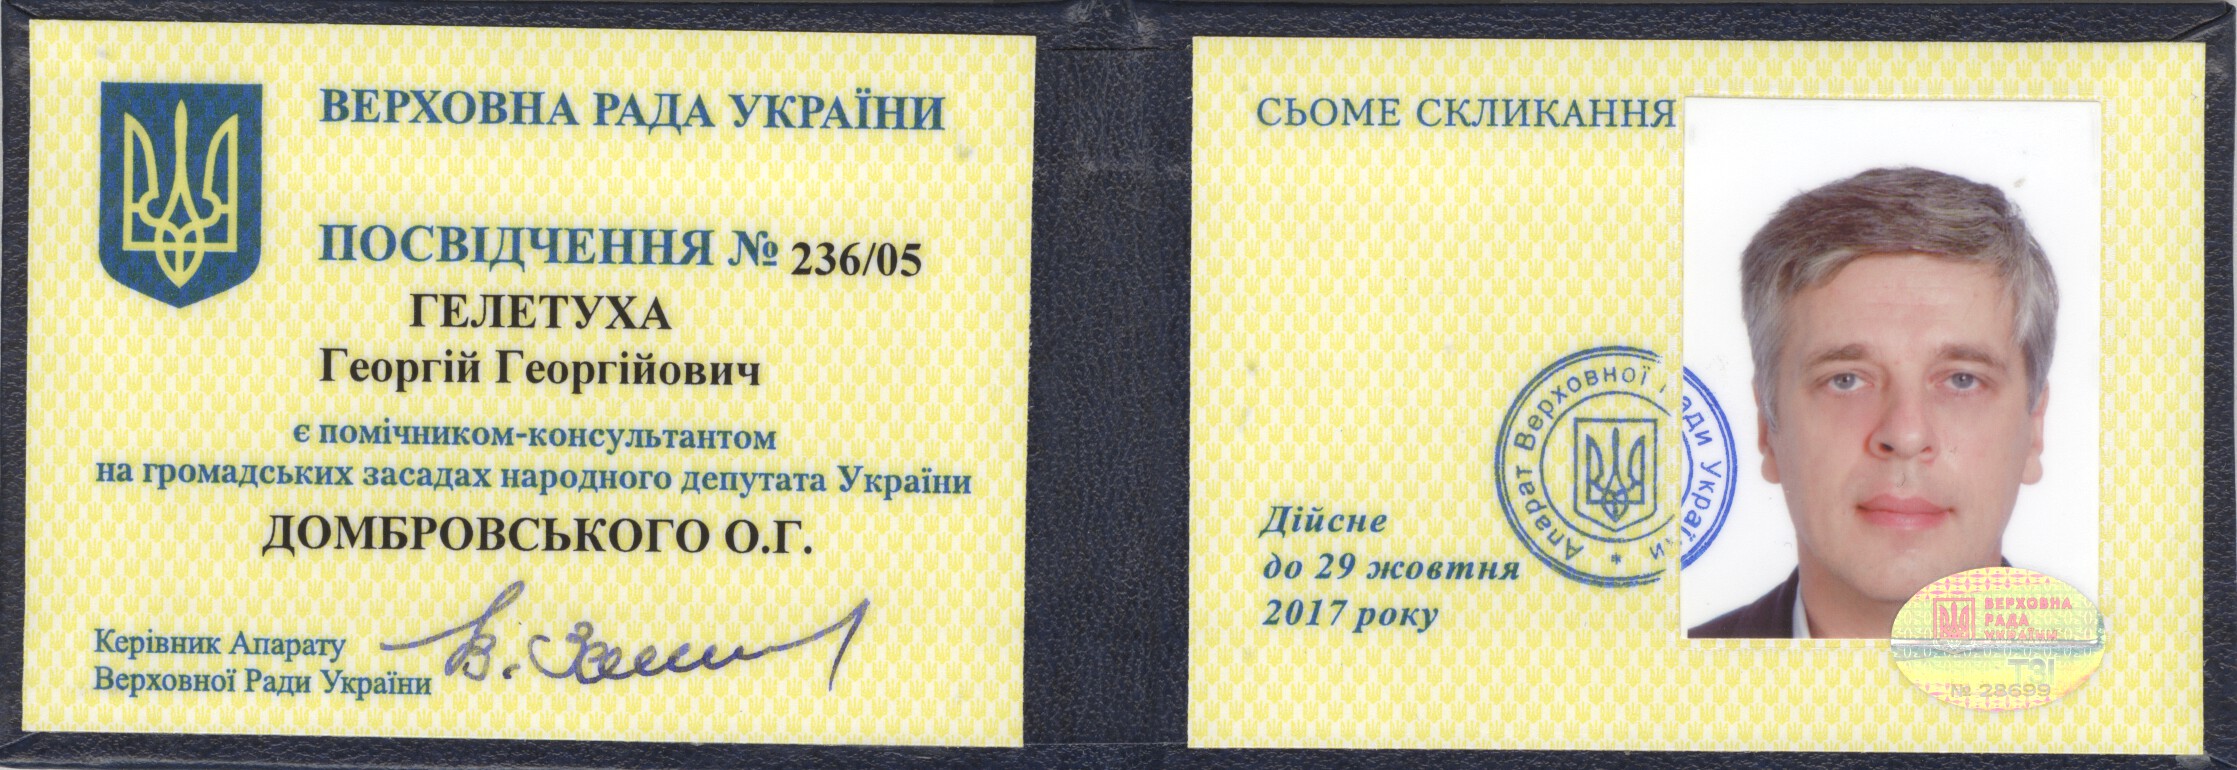 Удостоверение депутата Украины